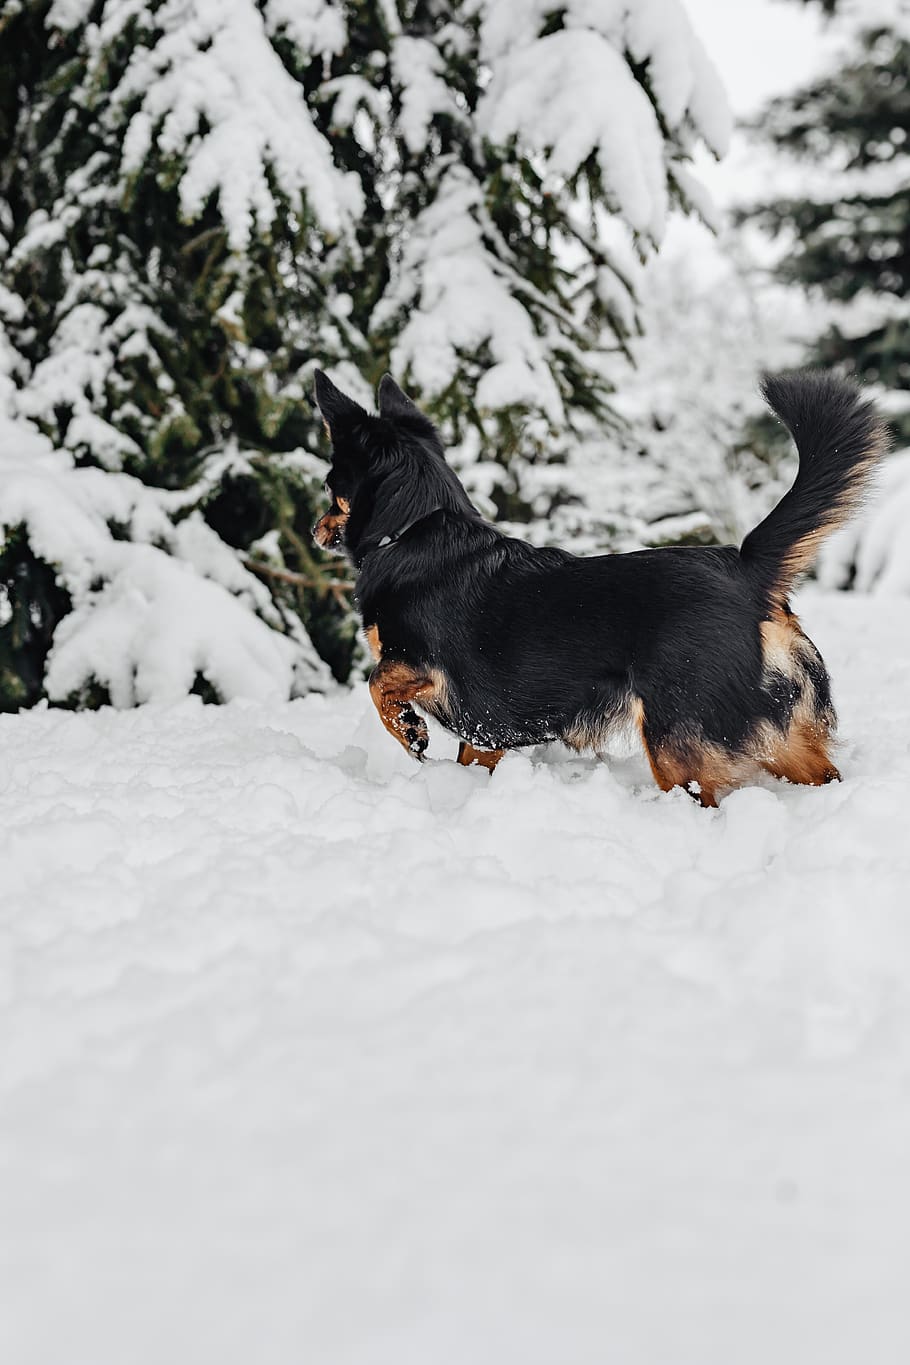 pequeño, perros, invierno, jugar, diversión, nieve, gracioso, animales, mascotas, lindo